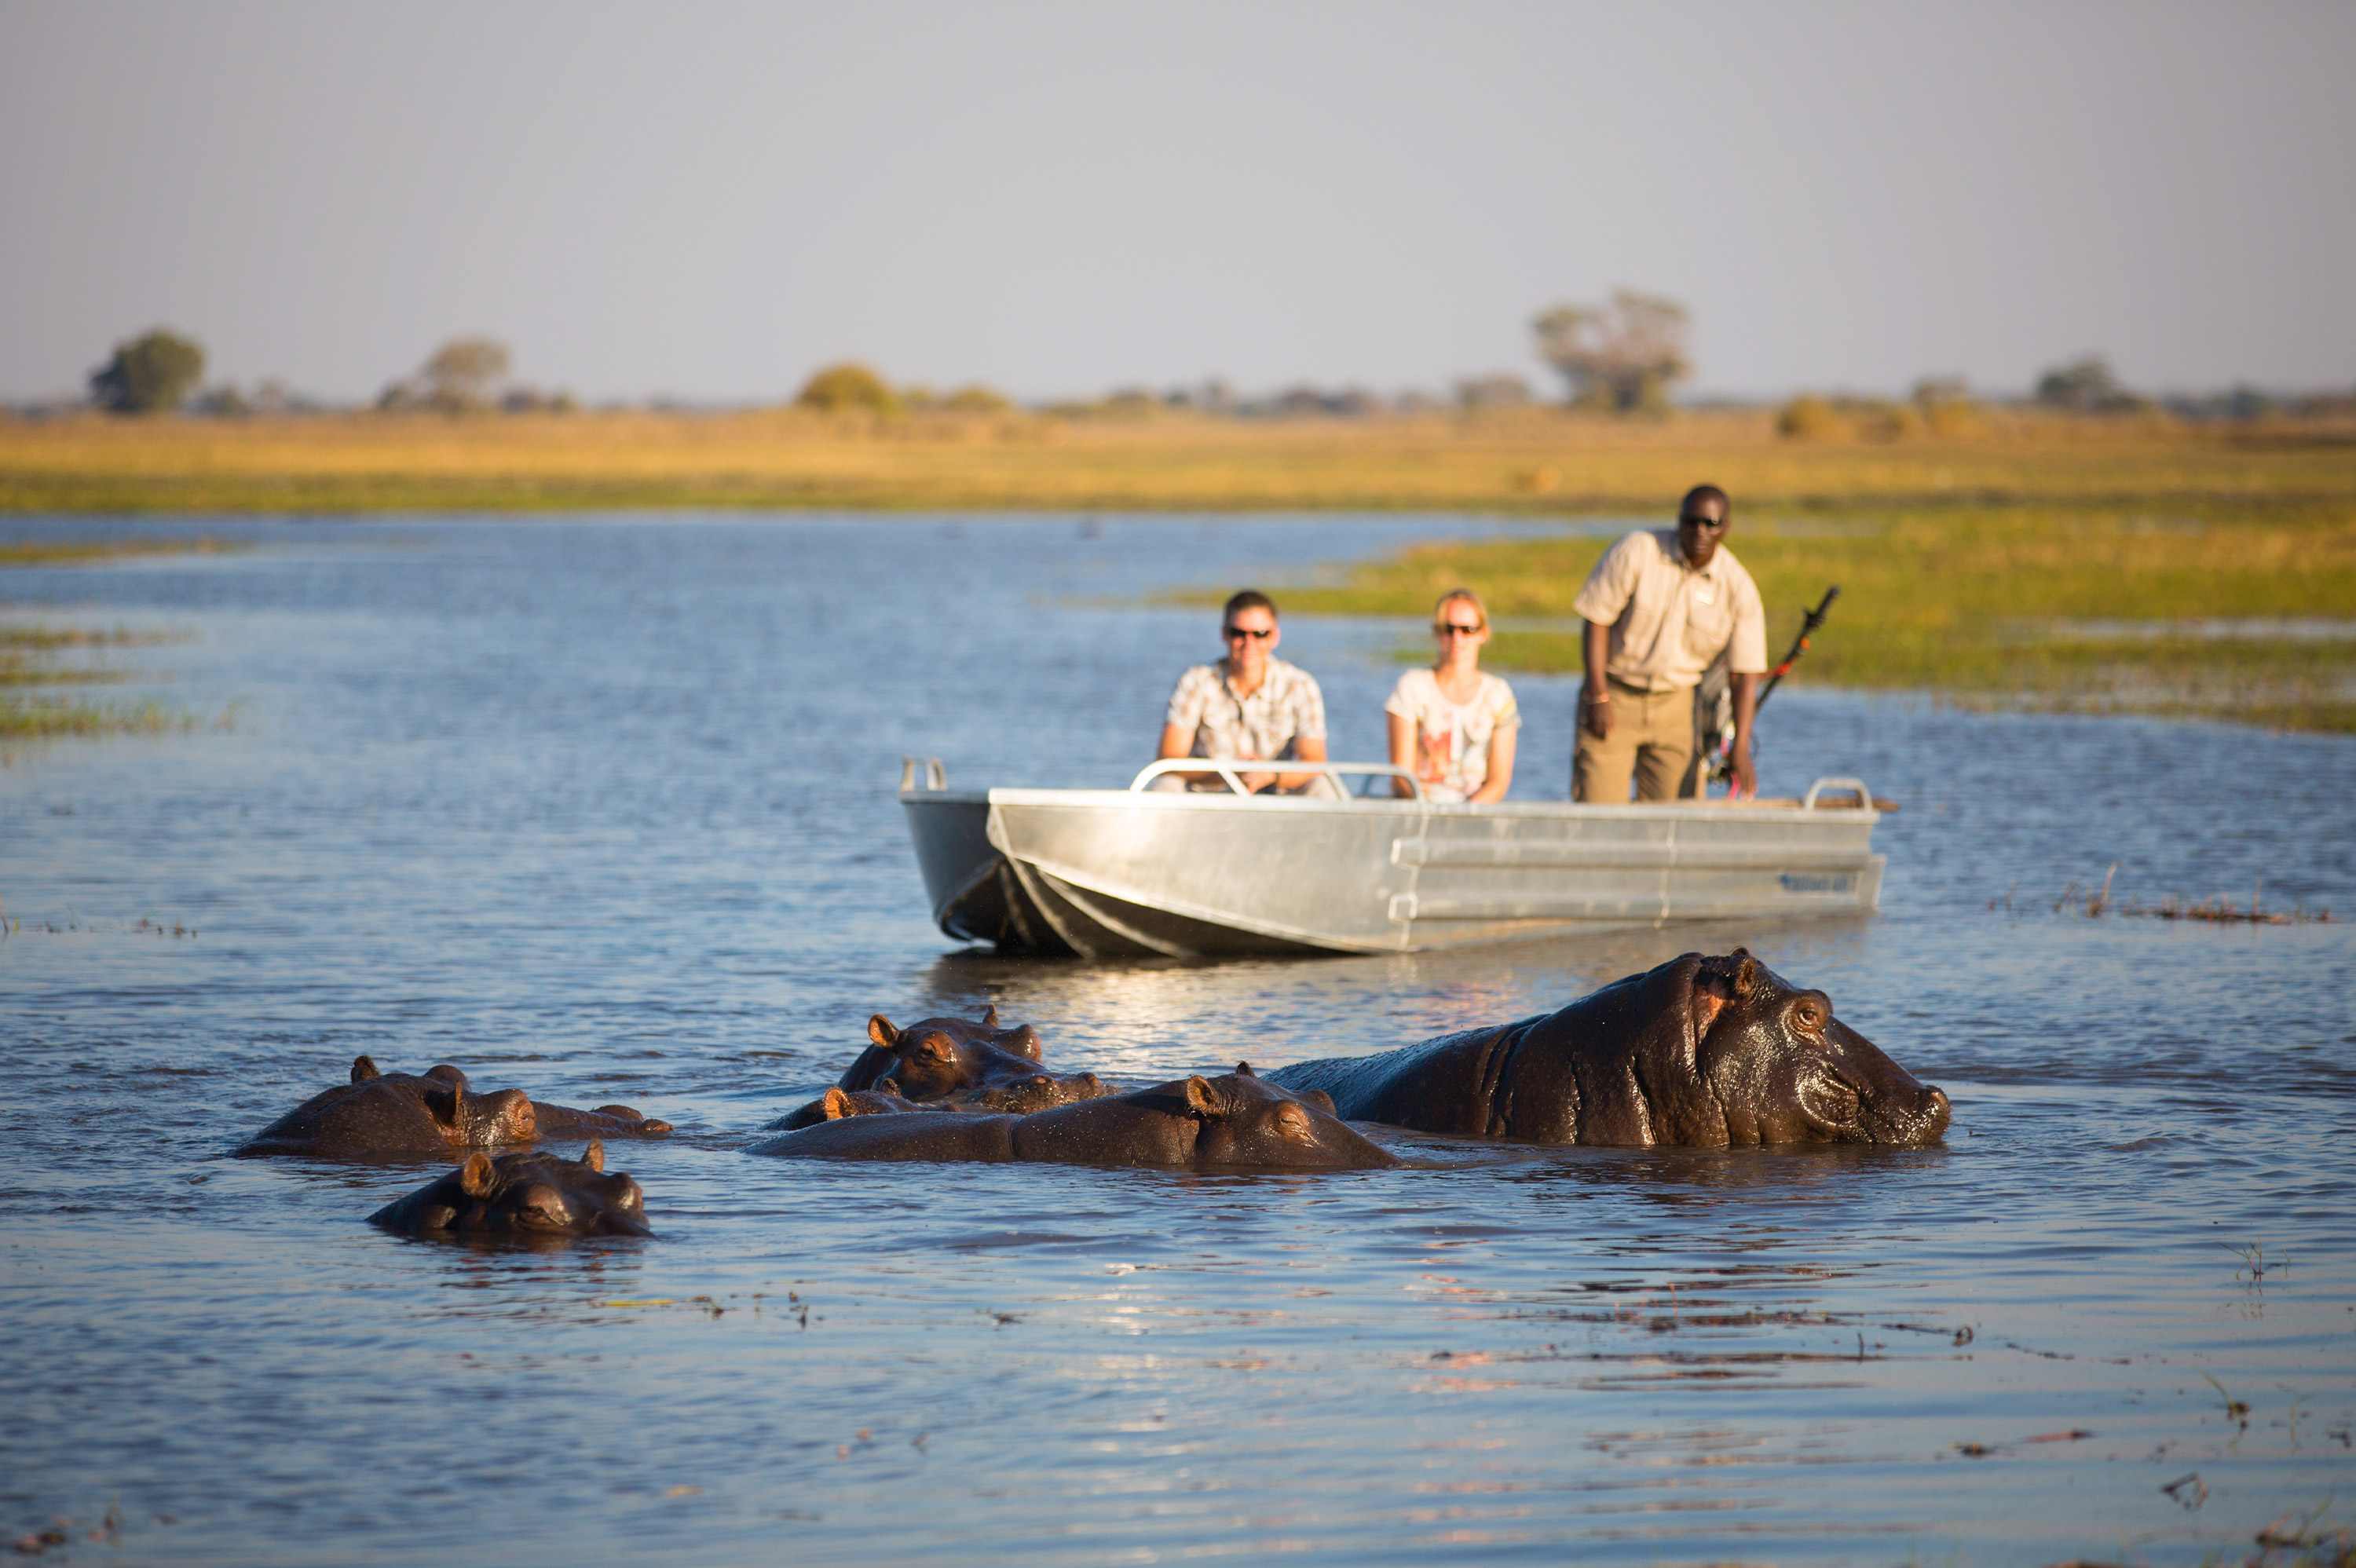 Boat-safari-Hippo-Zambia